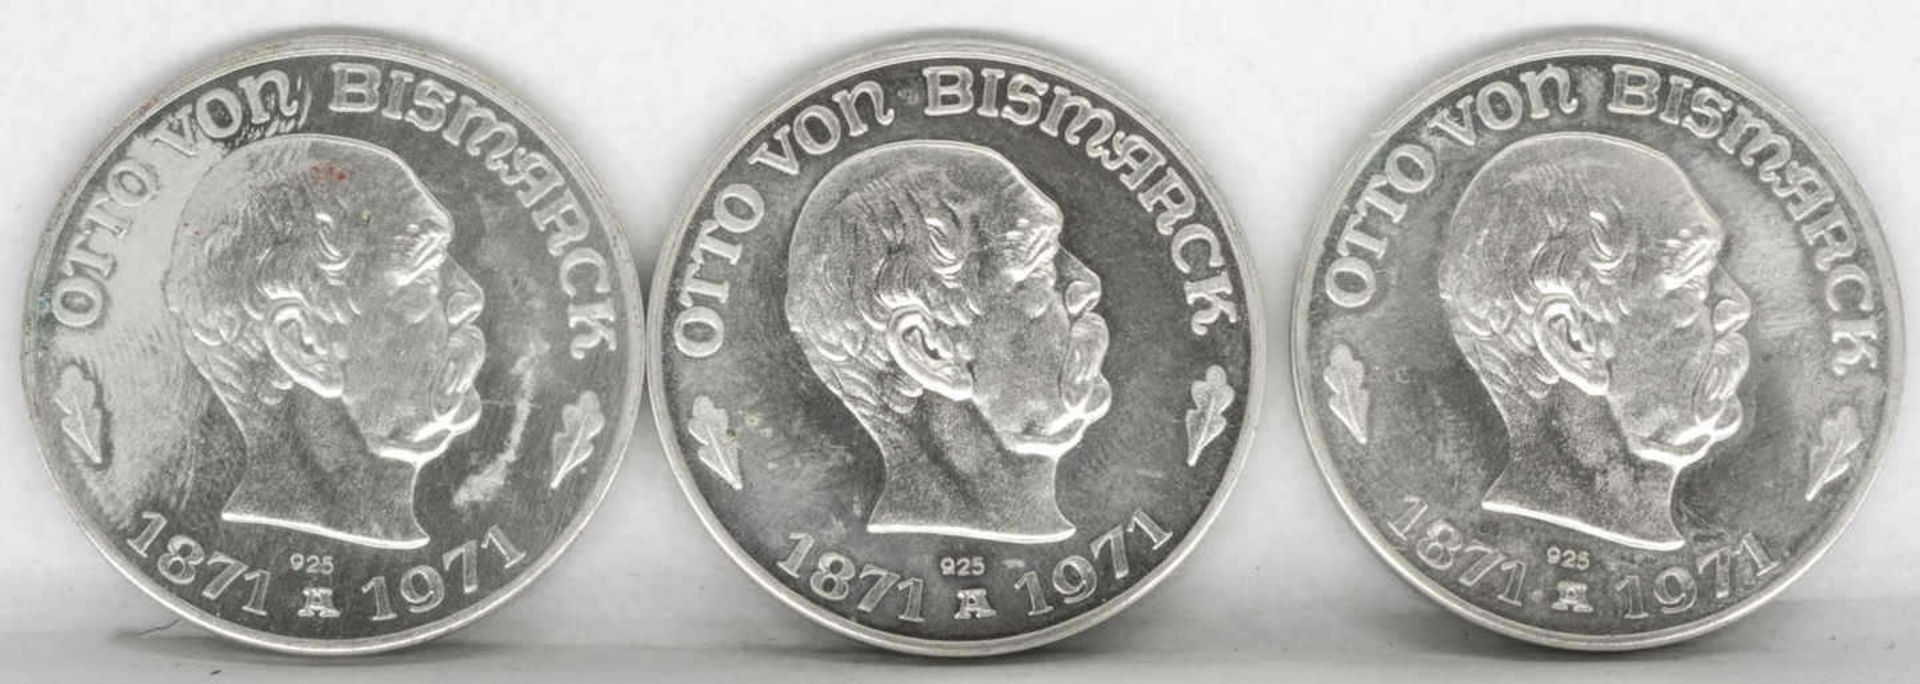 Drei Silbermedaillen "Otto von Bismarck" - Ewig lebt der Reichskanzler. Silber 925. Gesamtgewicht: